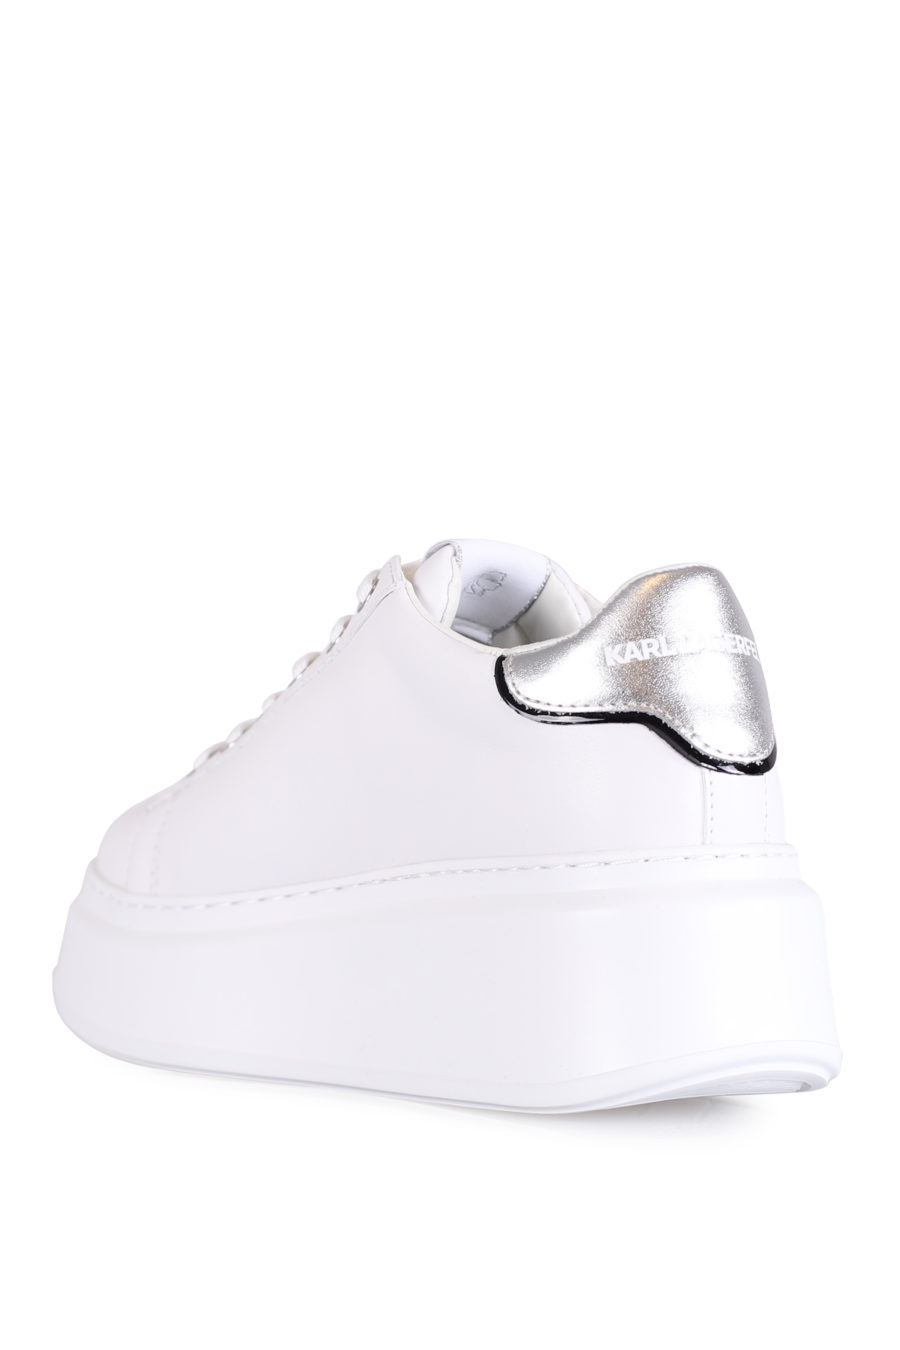 Zapatillas blancas con suela alta y logo de la marca - IMG 0724